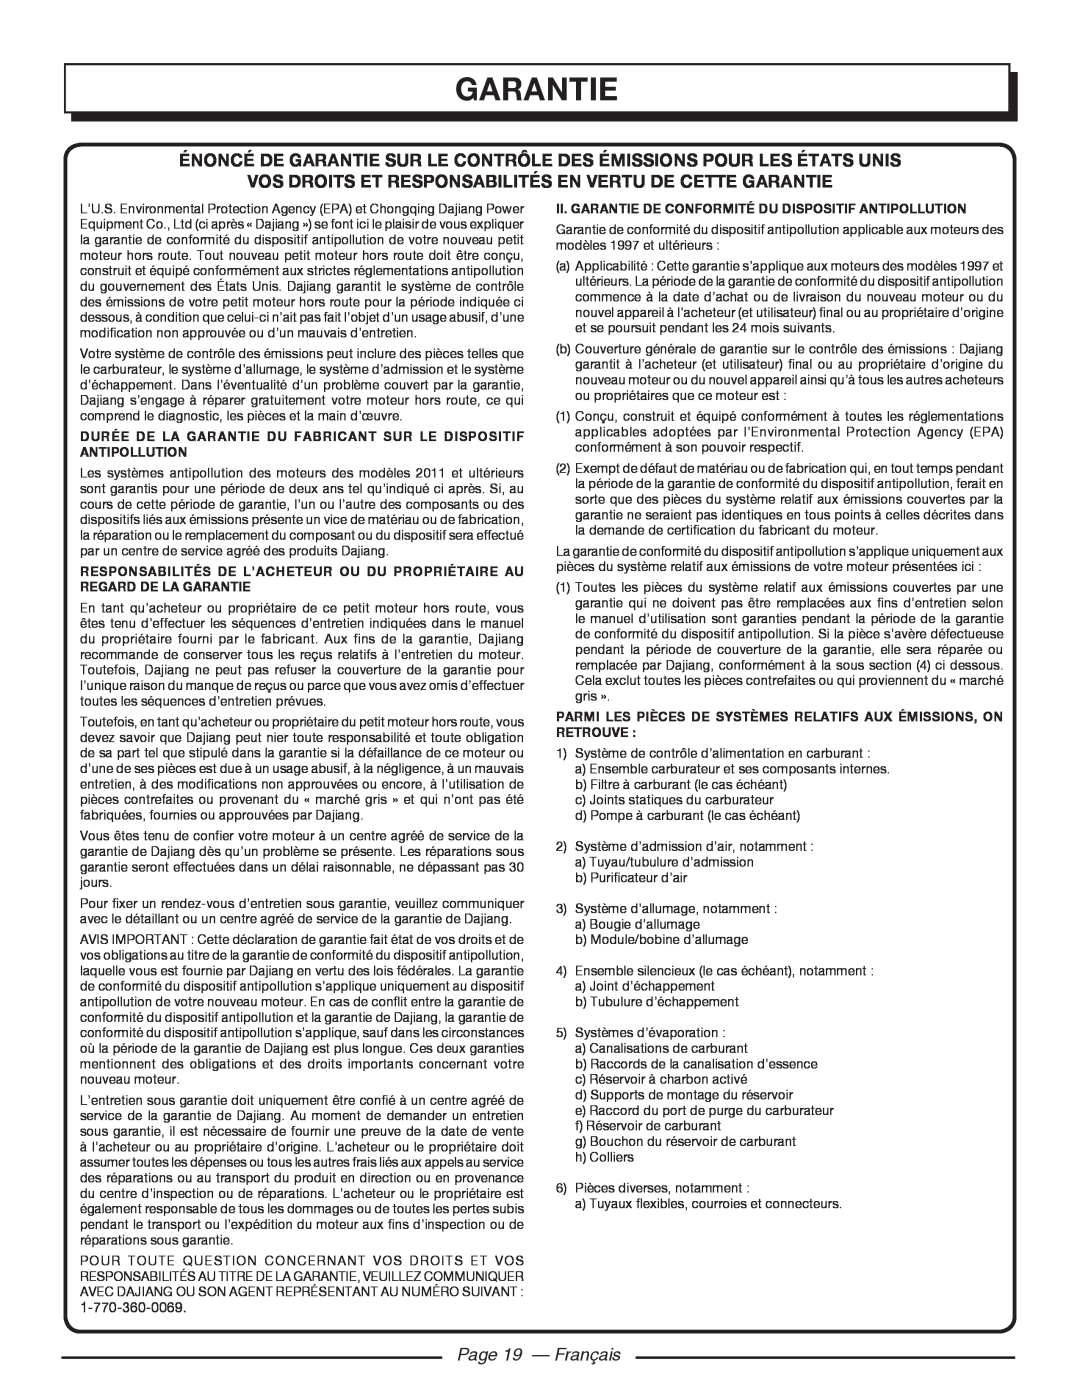 Homelite HGCA5000 Énoncé De Garantie Sur Le Contrôle Des Émissions Pour Les États Unis, Page 19 - Français 